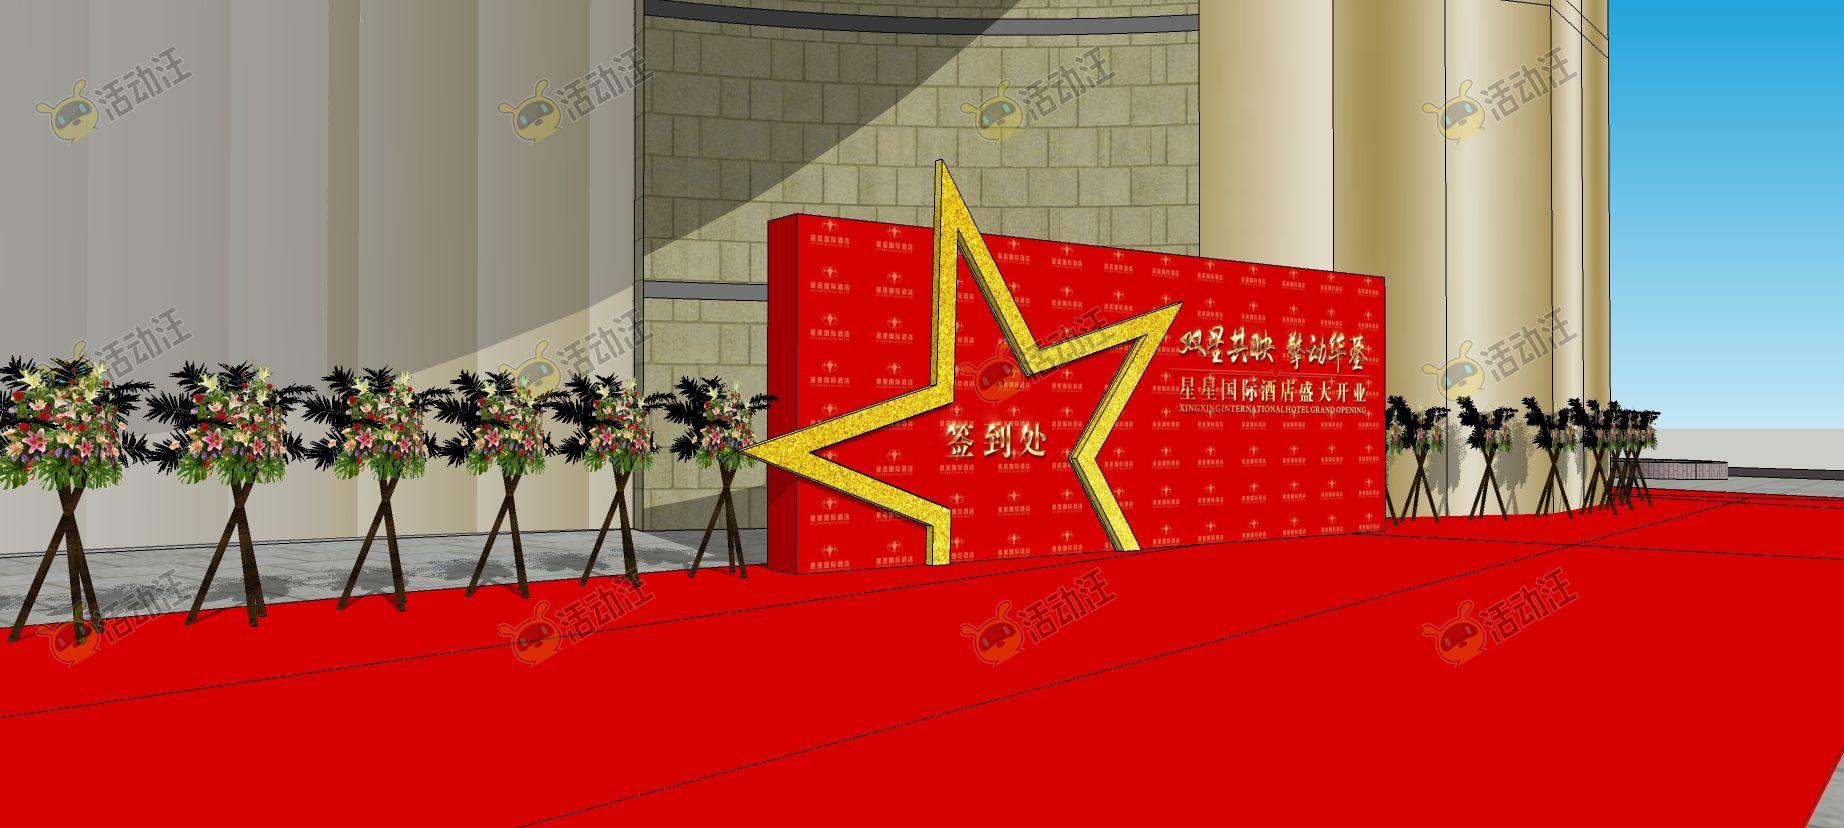 开业庆典 欢迎区活动舞台舞美3d效果图